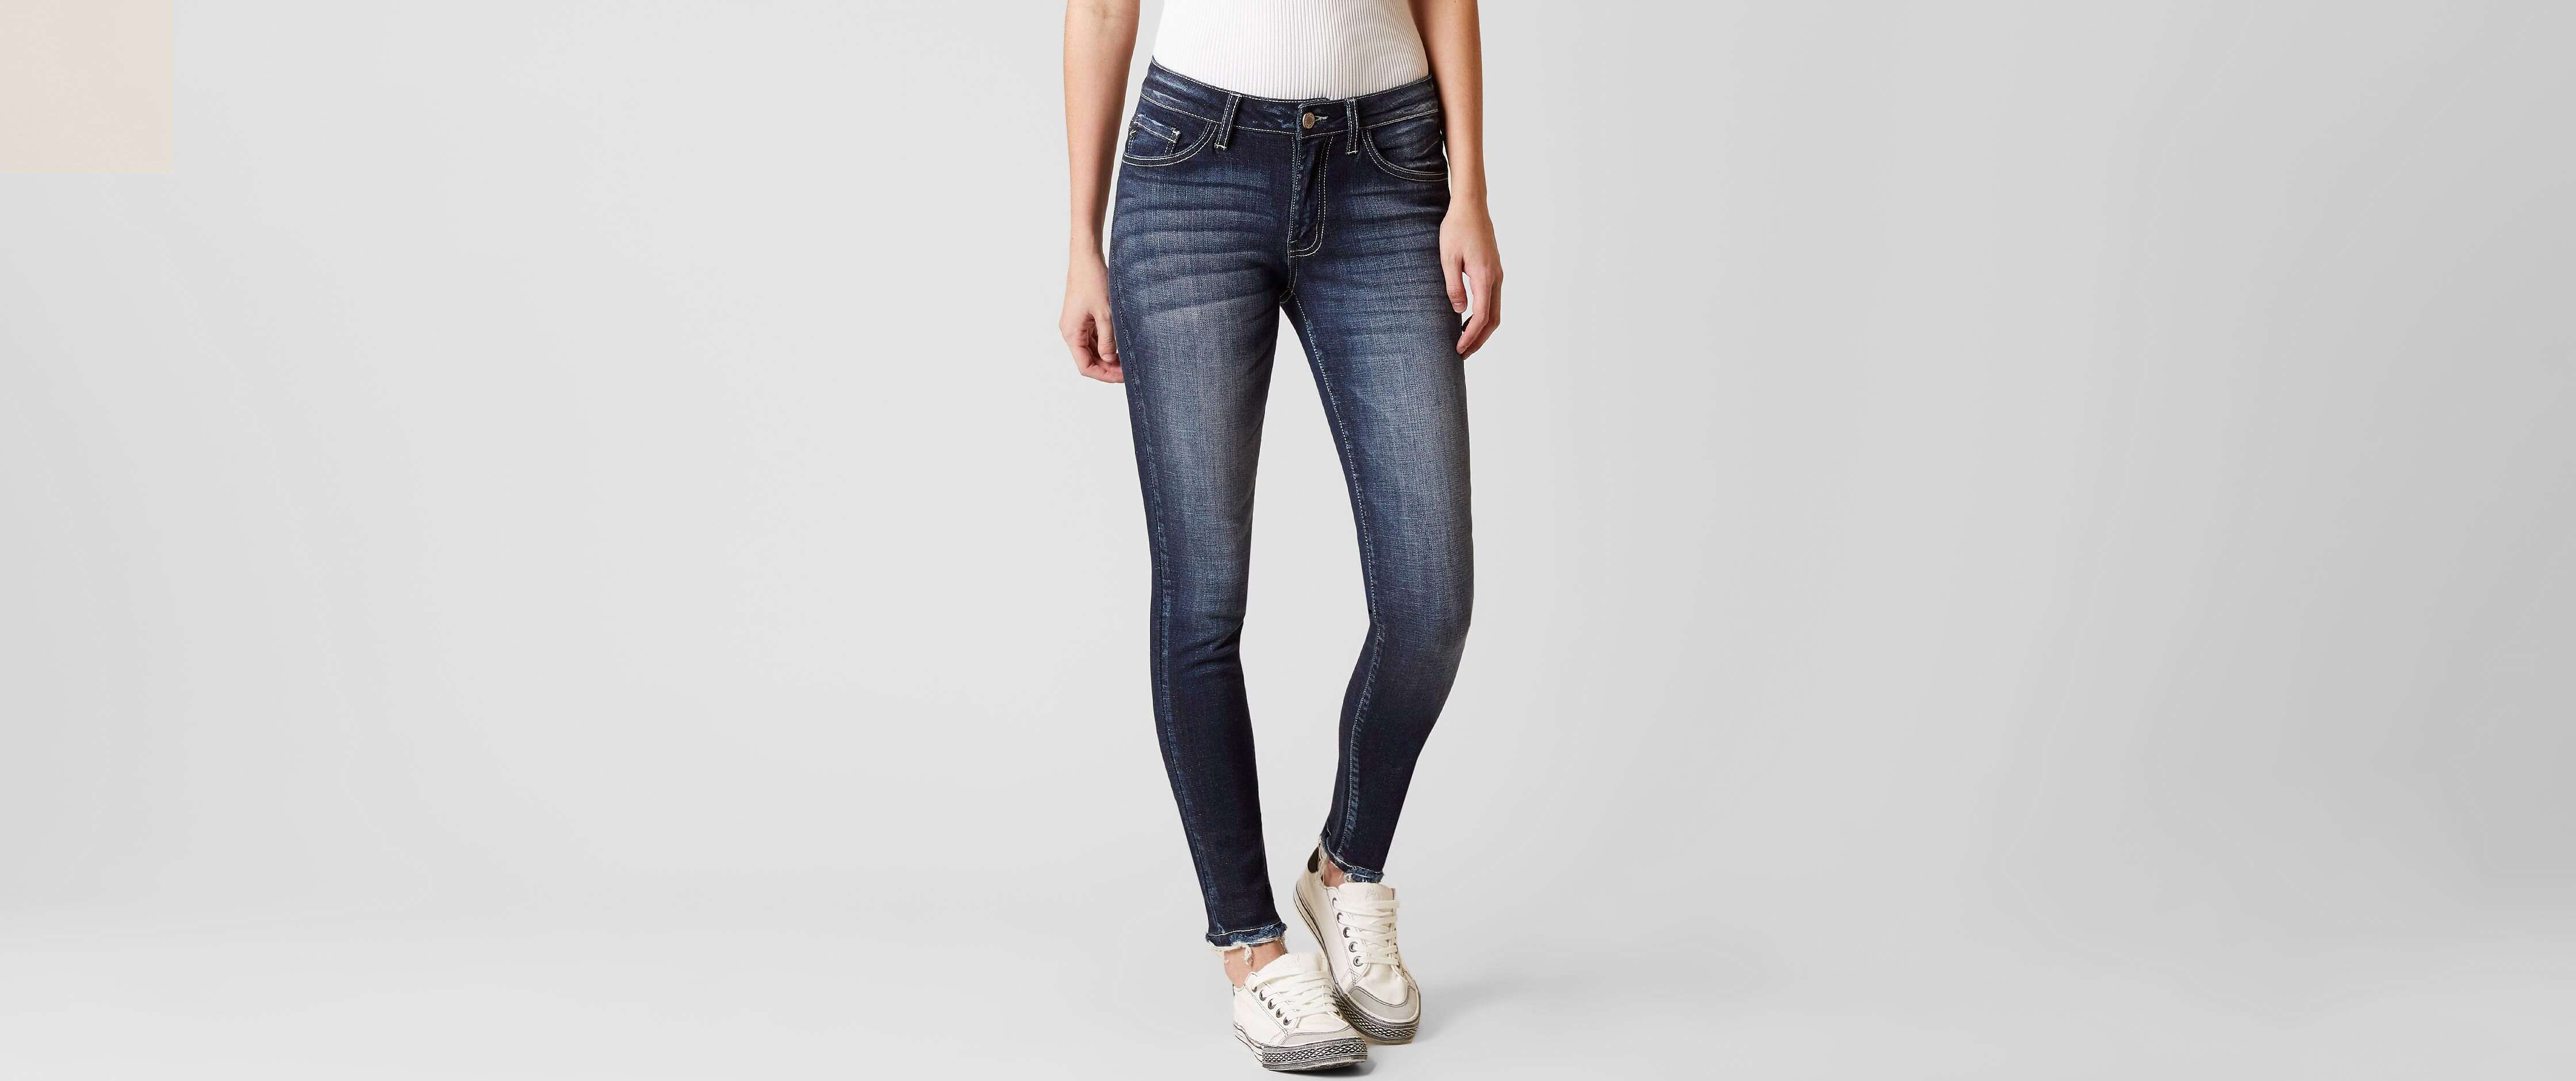 kancan jeans wholesale